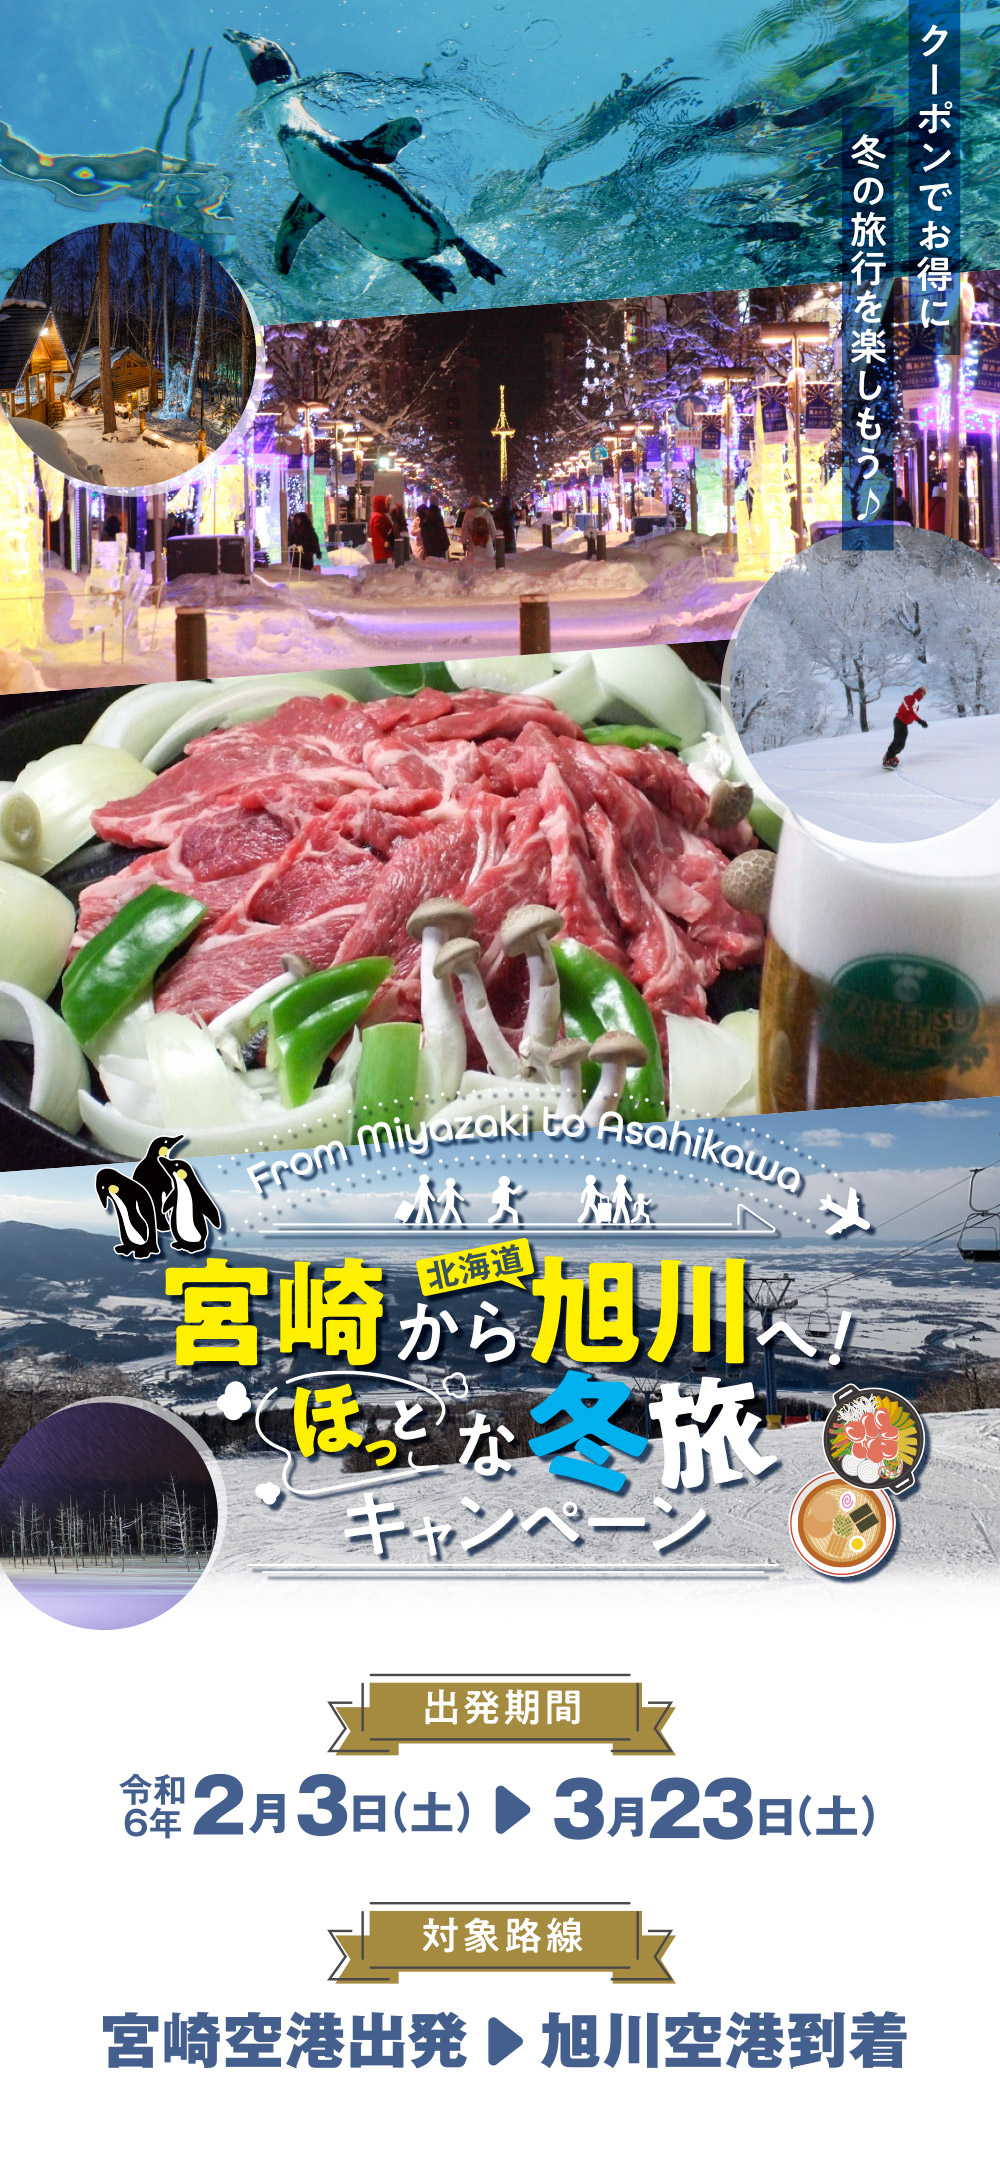 宮崎から北海道旭川へ ほっとな冬旅キャンペーン